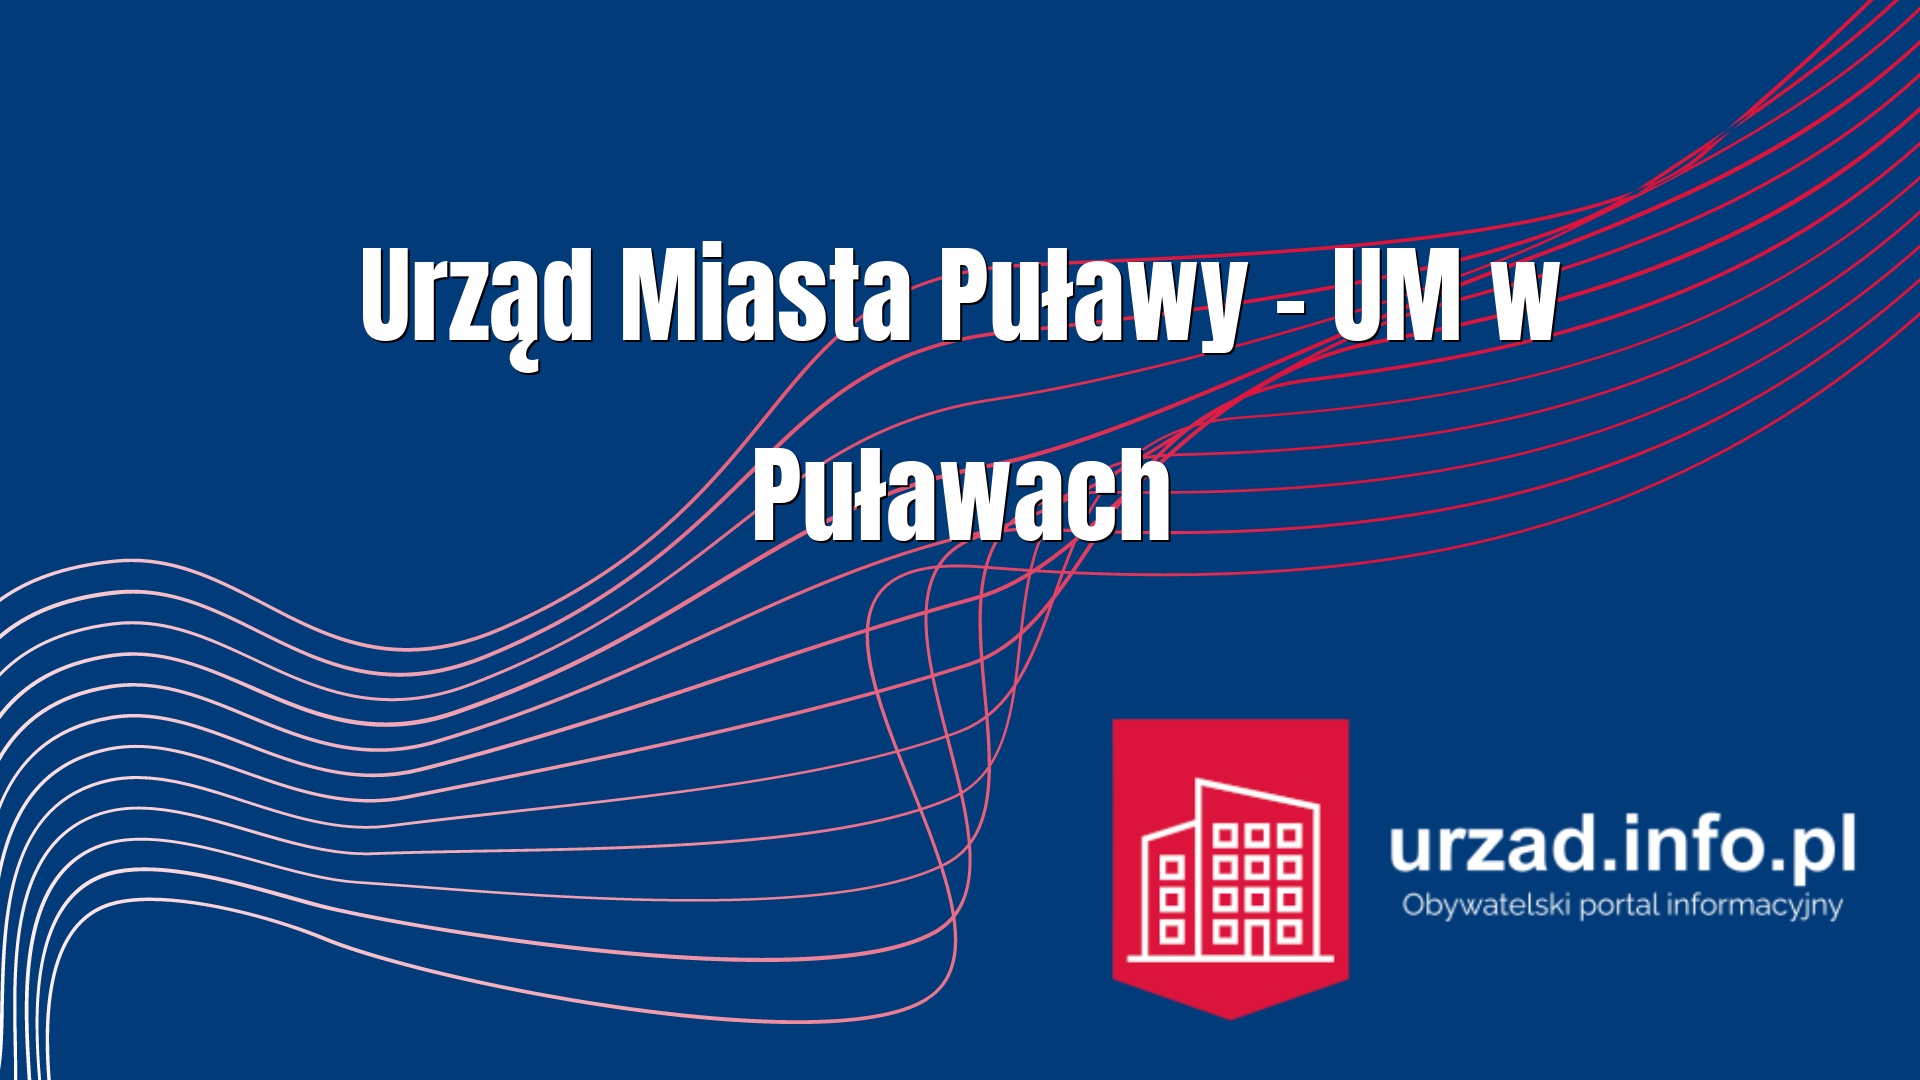 Urząd Miasta Puławy – UM w Puławach